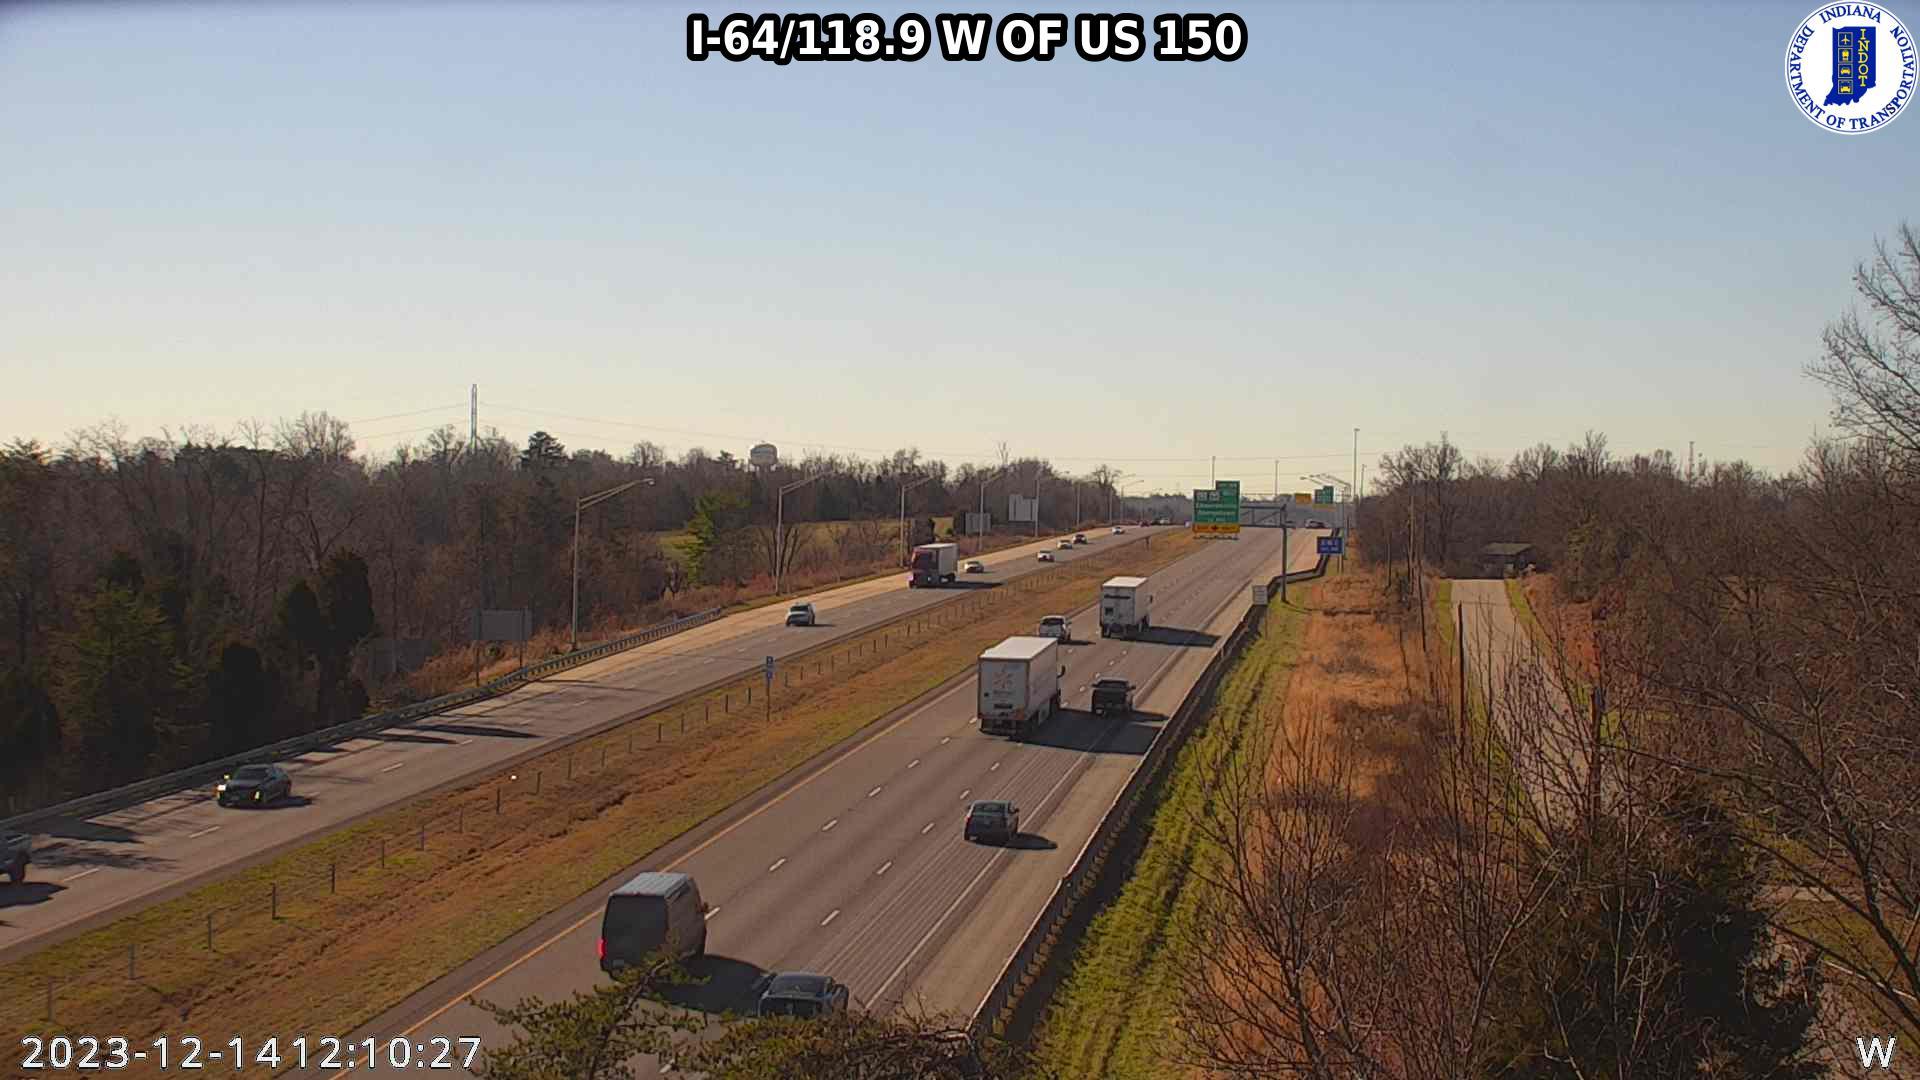 Edwardsville: I-64: I-64/118.9 W OF US 150 Traffic Camera